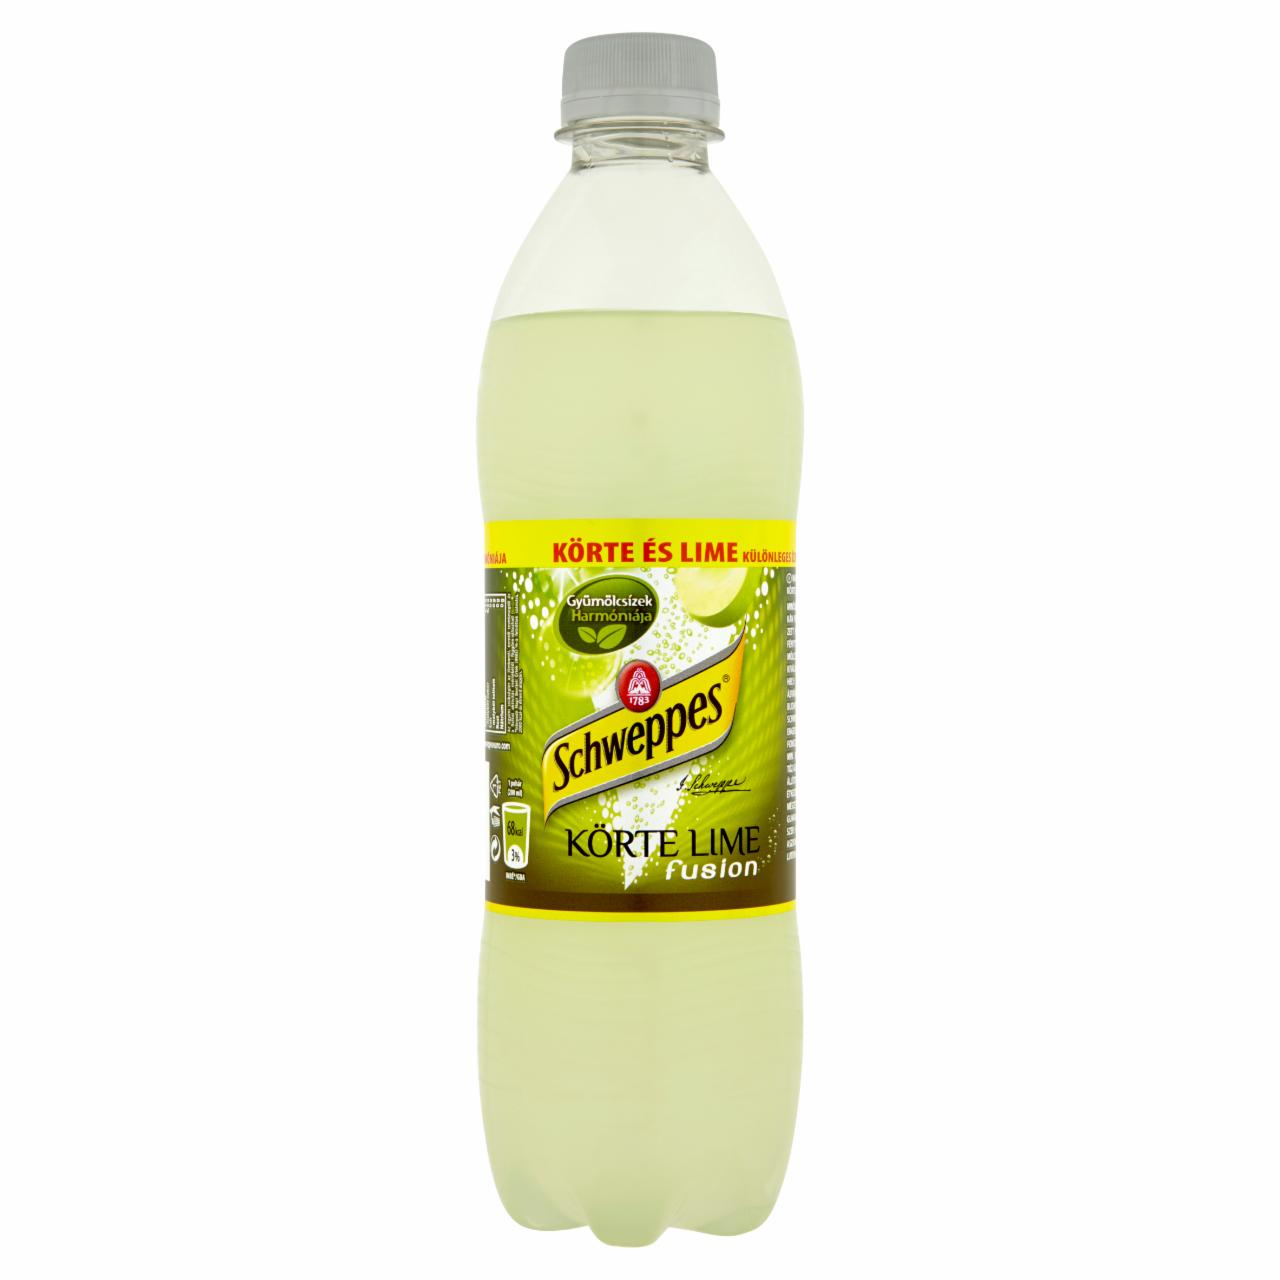 Képek - Schweppes Körte Lime Fusion narancs szénsavas üdítőital 0,5 l